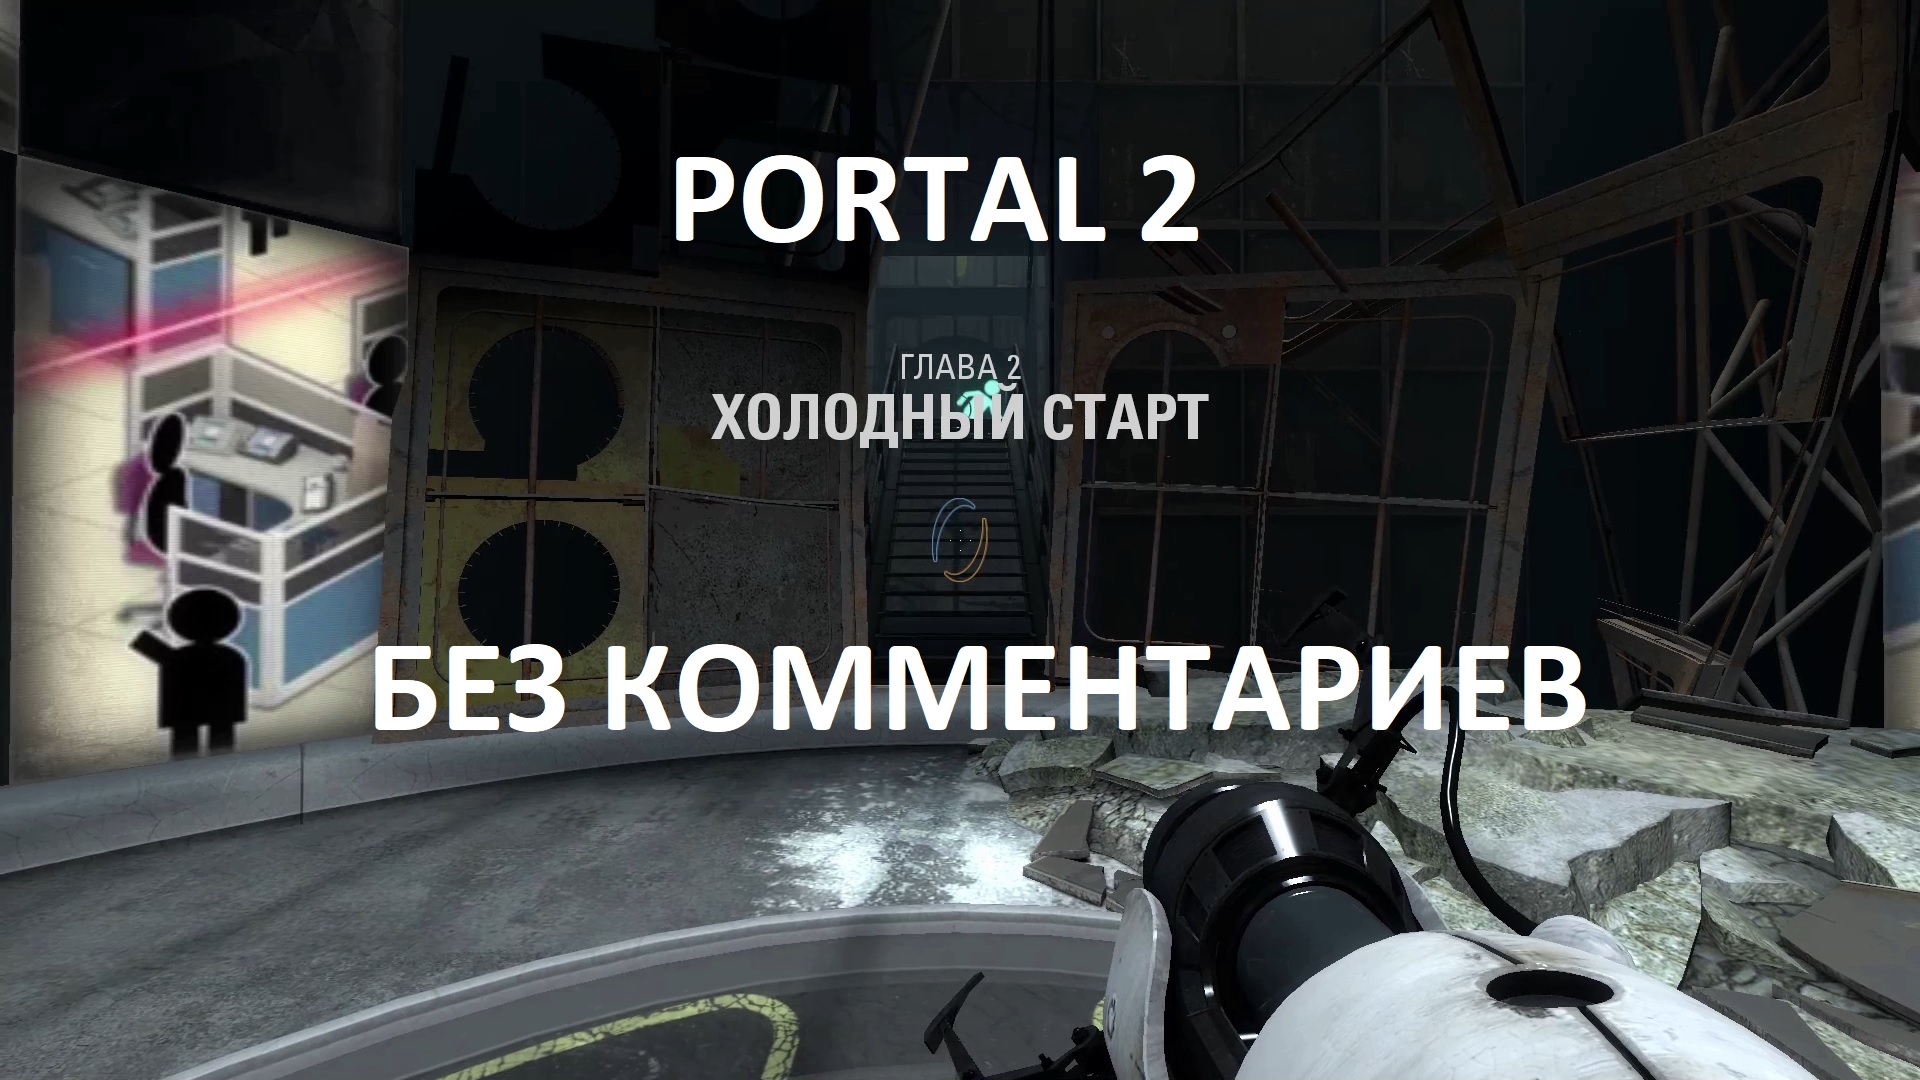 Portal 2 кооператив как пройти фото 50